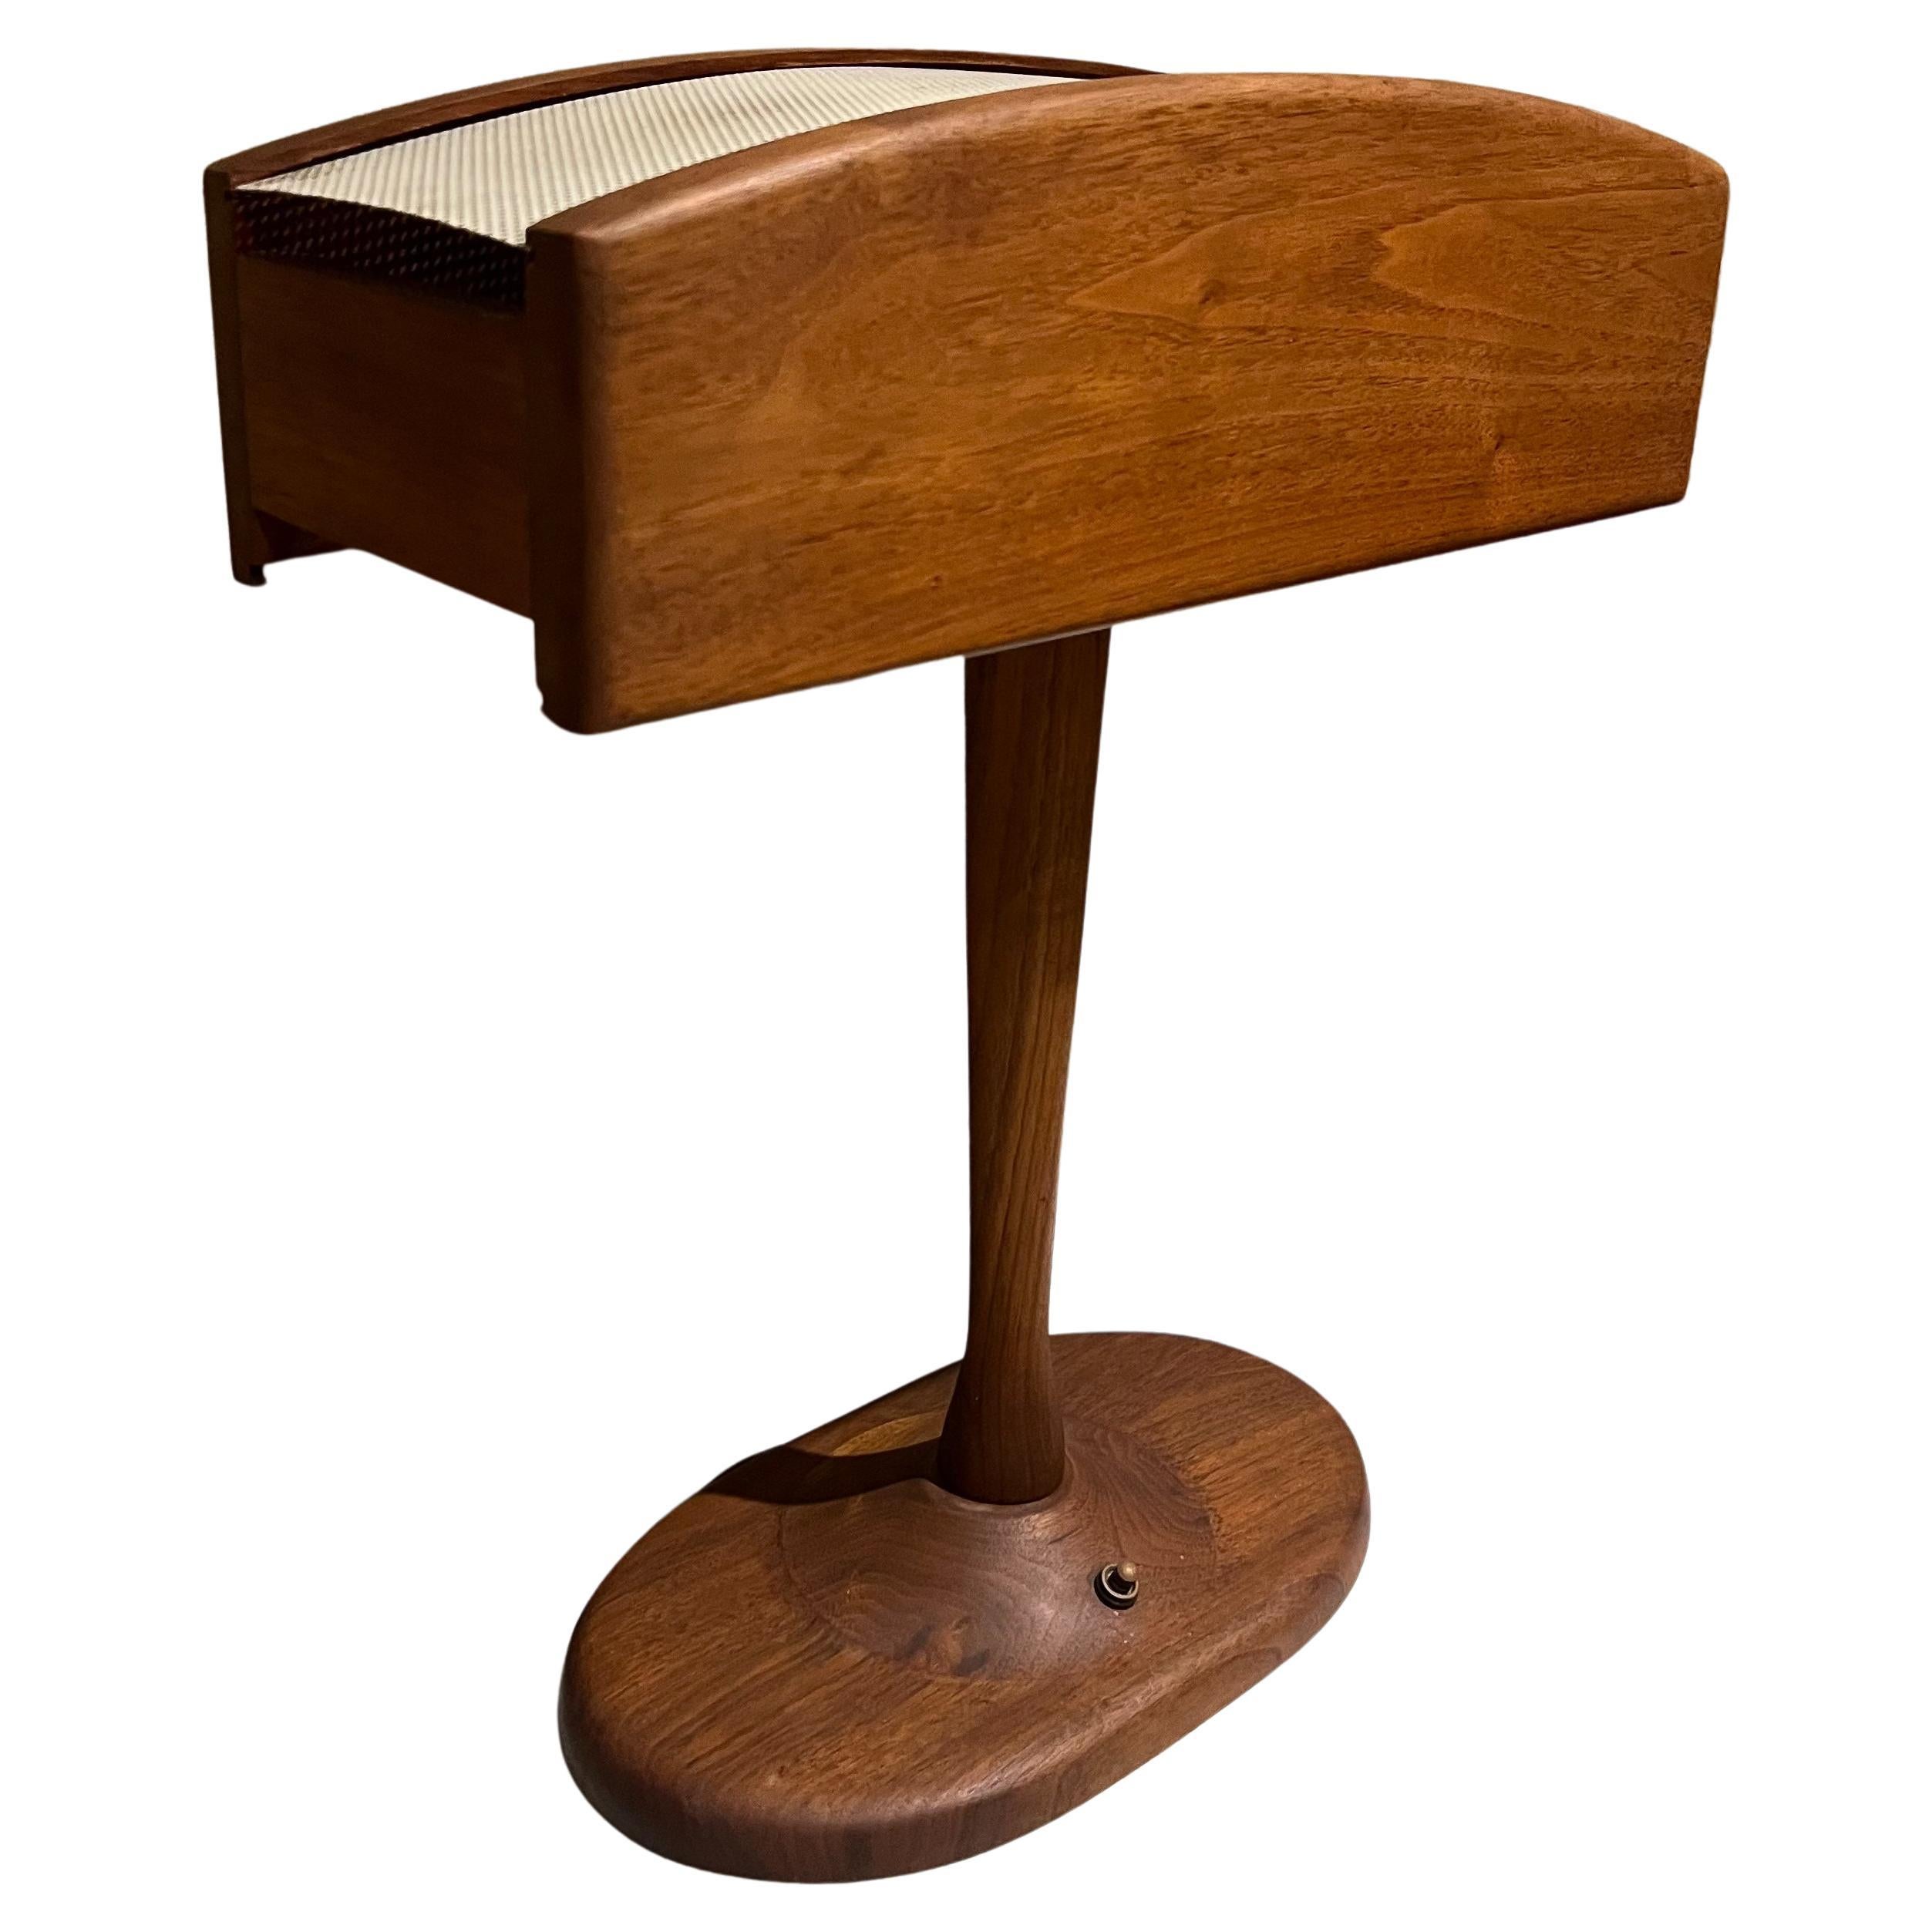 1960s Midcentury Modern Warm Walnut Wood Desk Lamp Organic Beauty For Sale